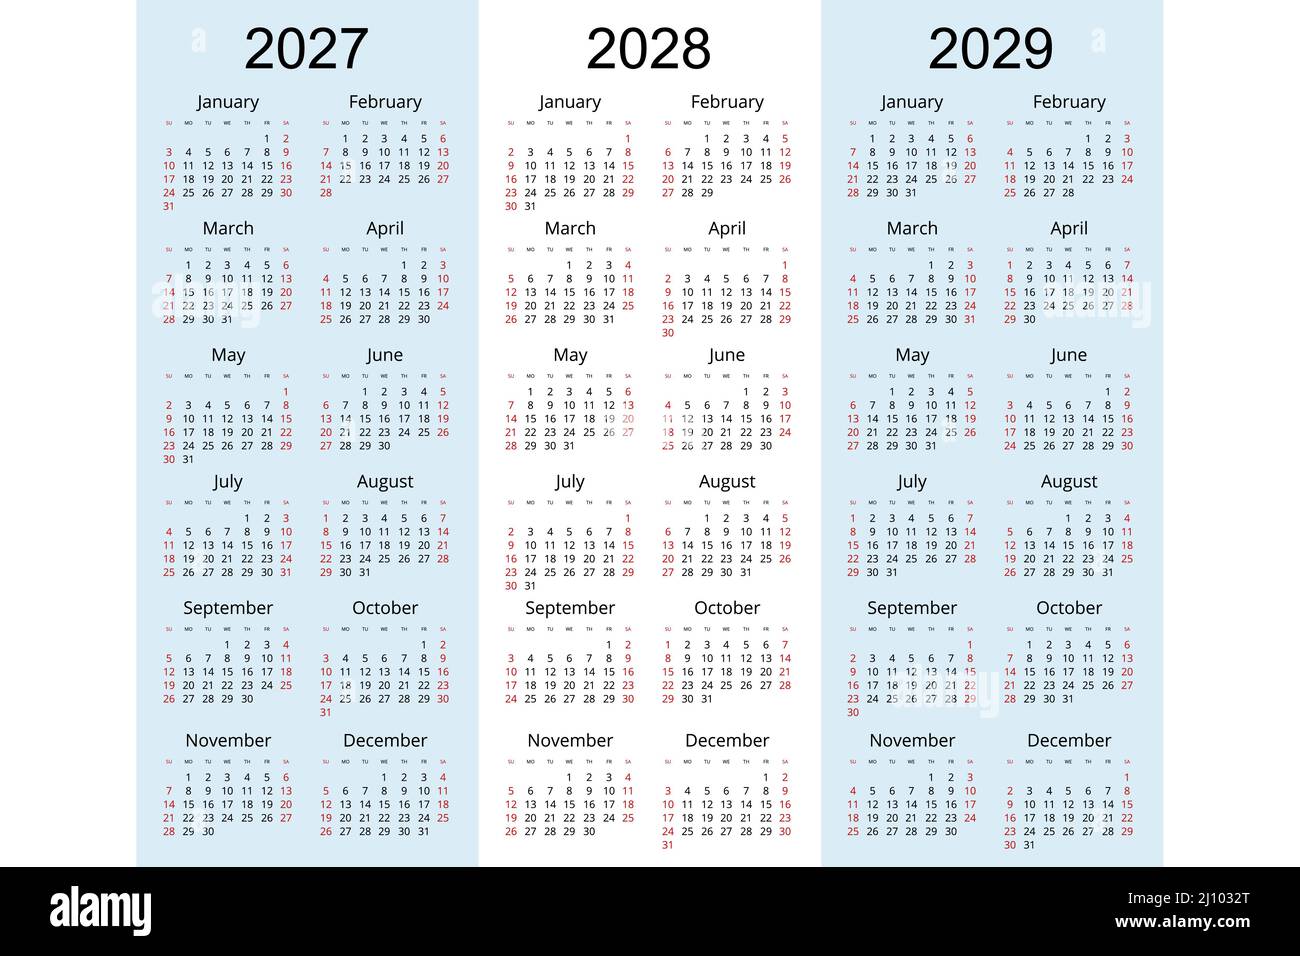 Пасха 2025 2026. 2026 2027 2028 2029. Календарь 2025 2026 года. Календарь 2023 2024 2025 2026 2027. Календарь на 2025 год.